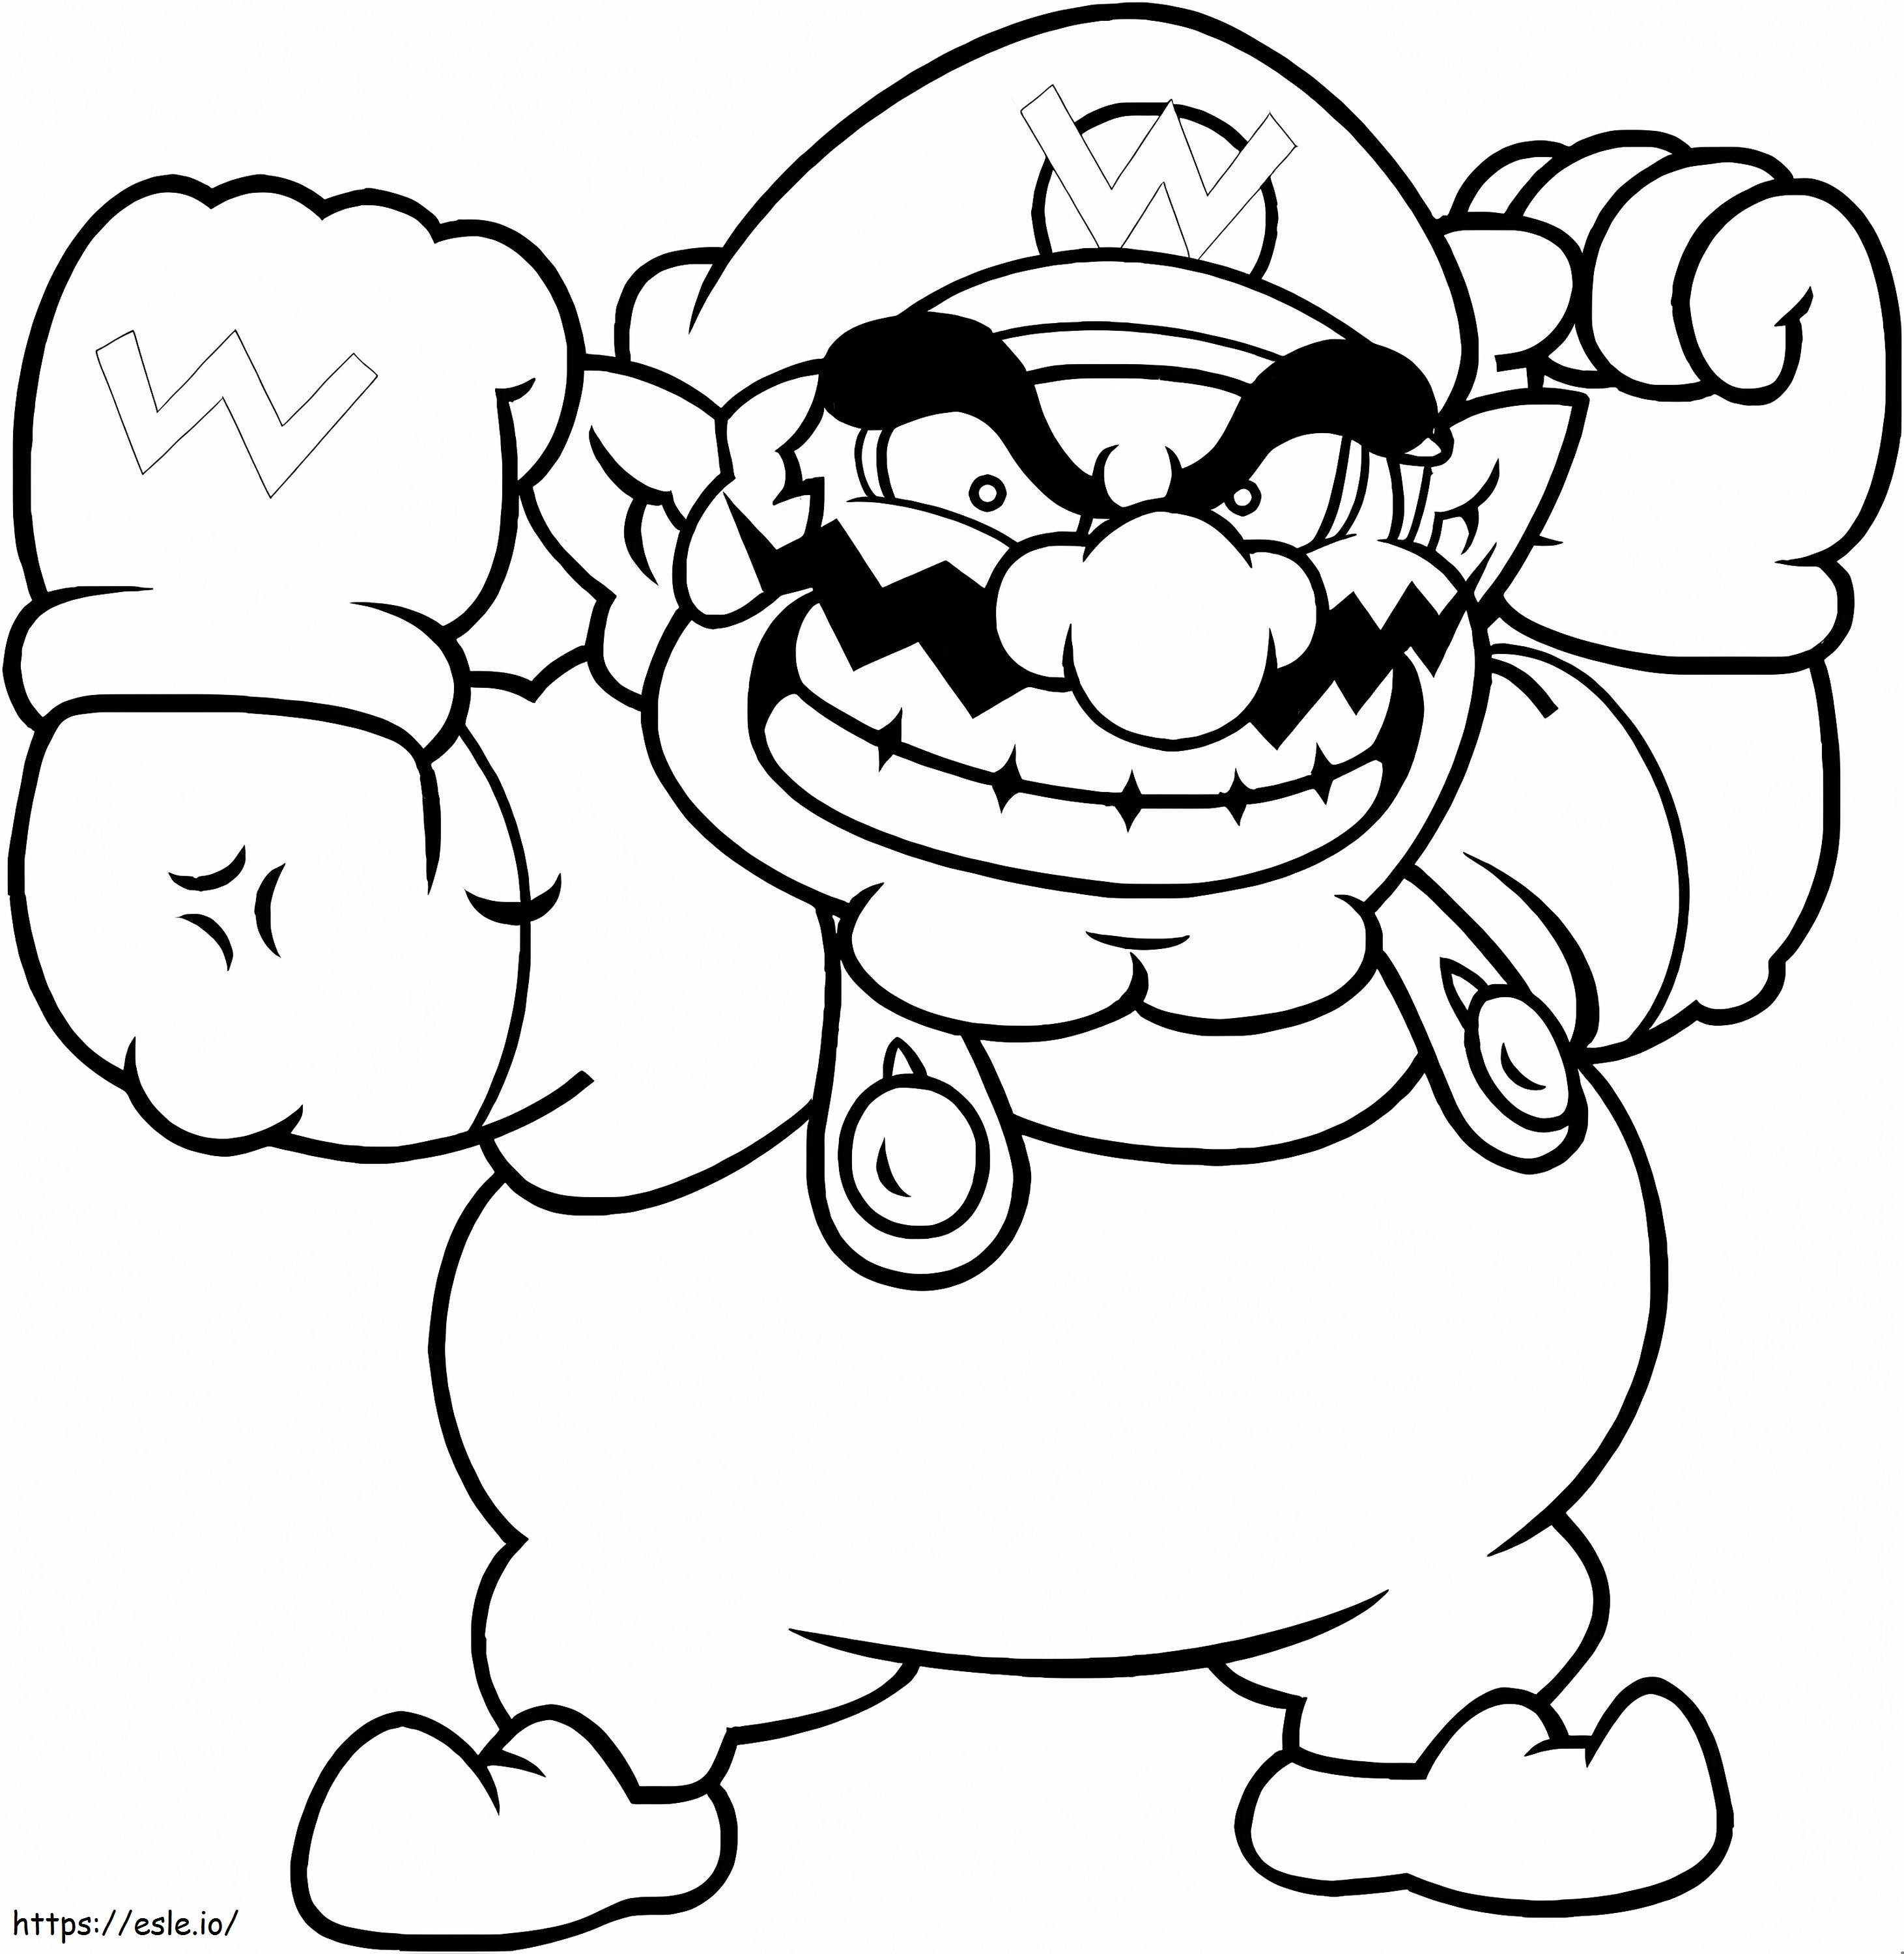 Wario von Super Mario ausmalbilder